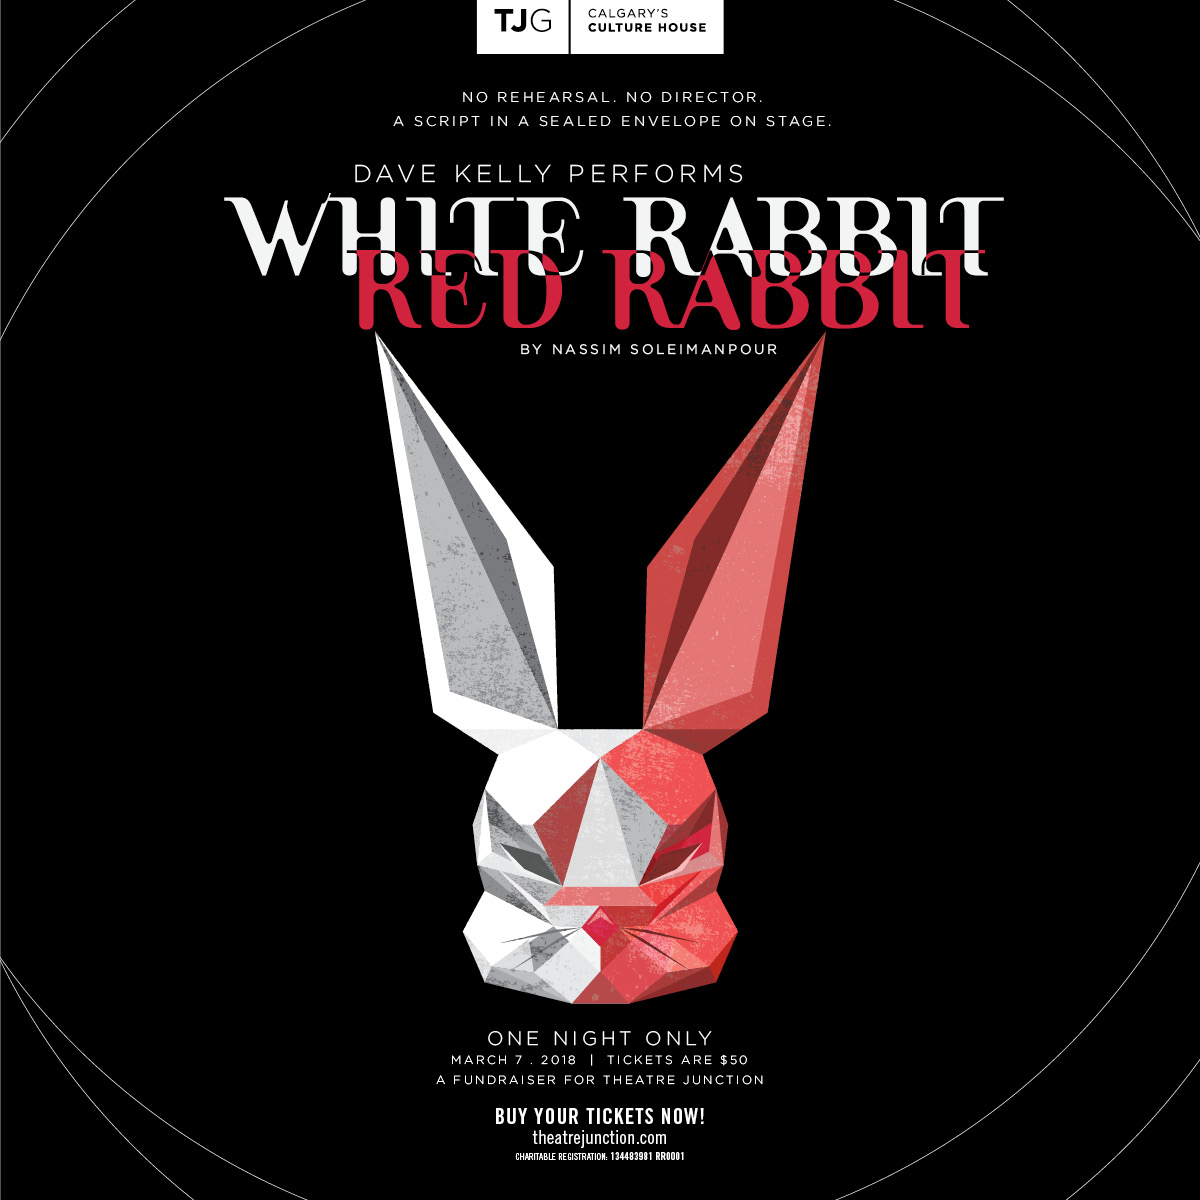 Image promo - White Rabbit Red Rabbit - TJG JPG